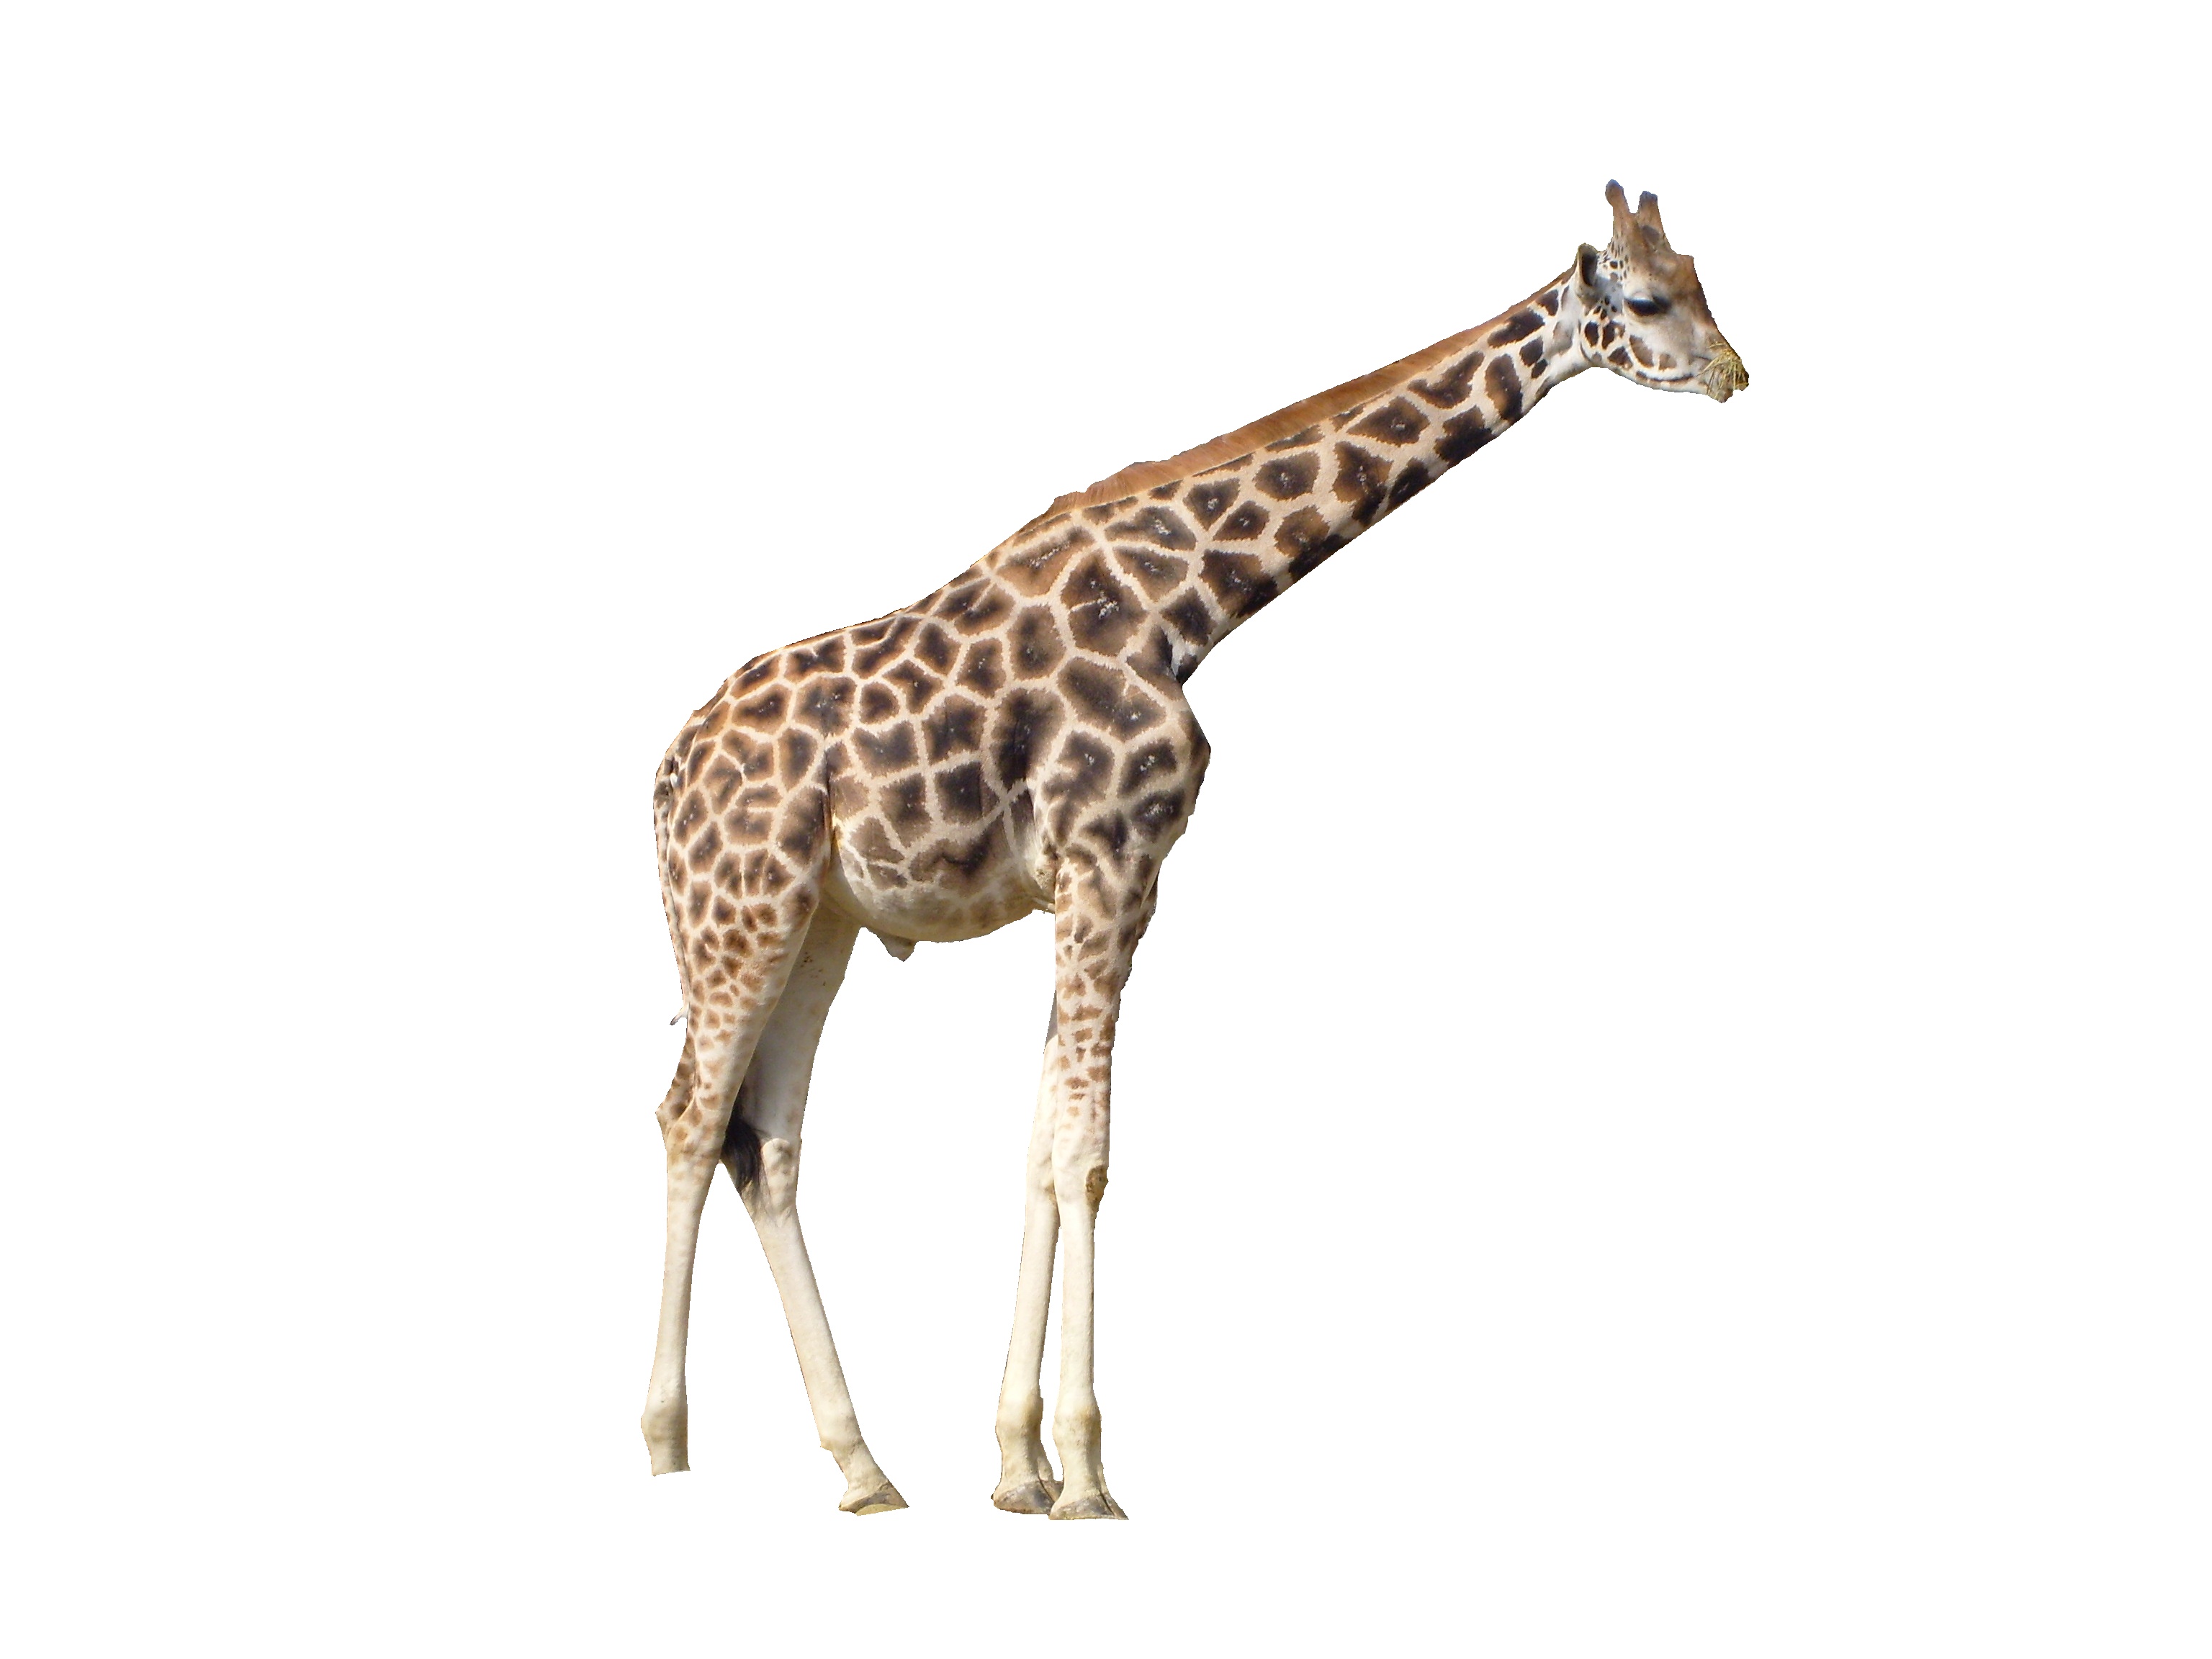 giraffe image sanskrit